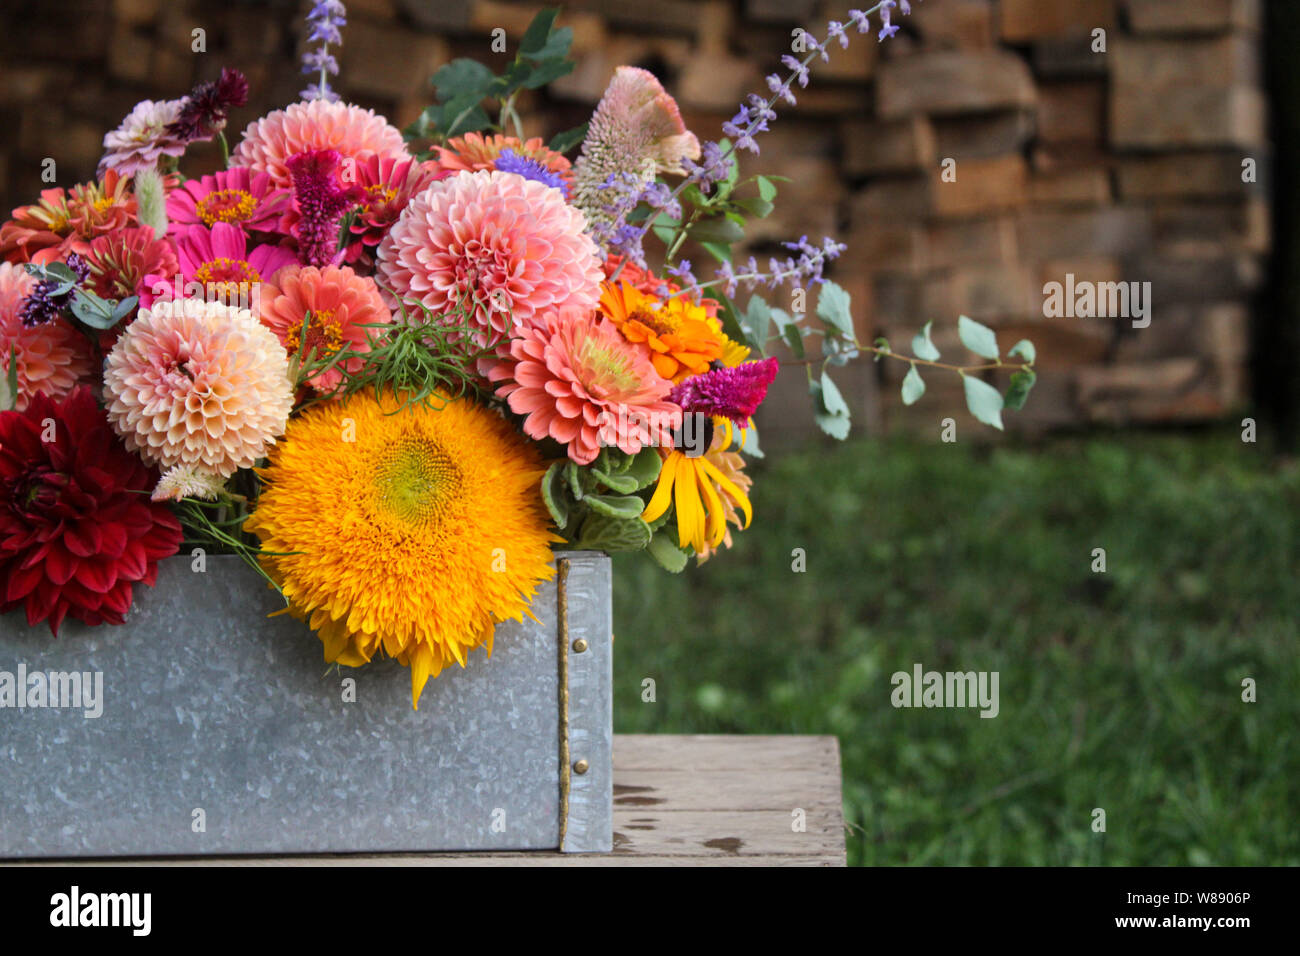 Arrangement floral dans la case en face de fond de bois Banque D'Images